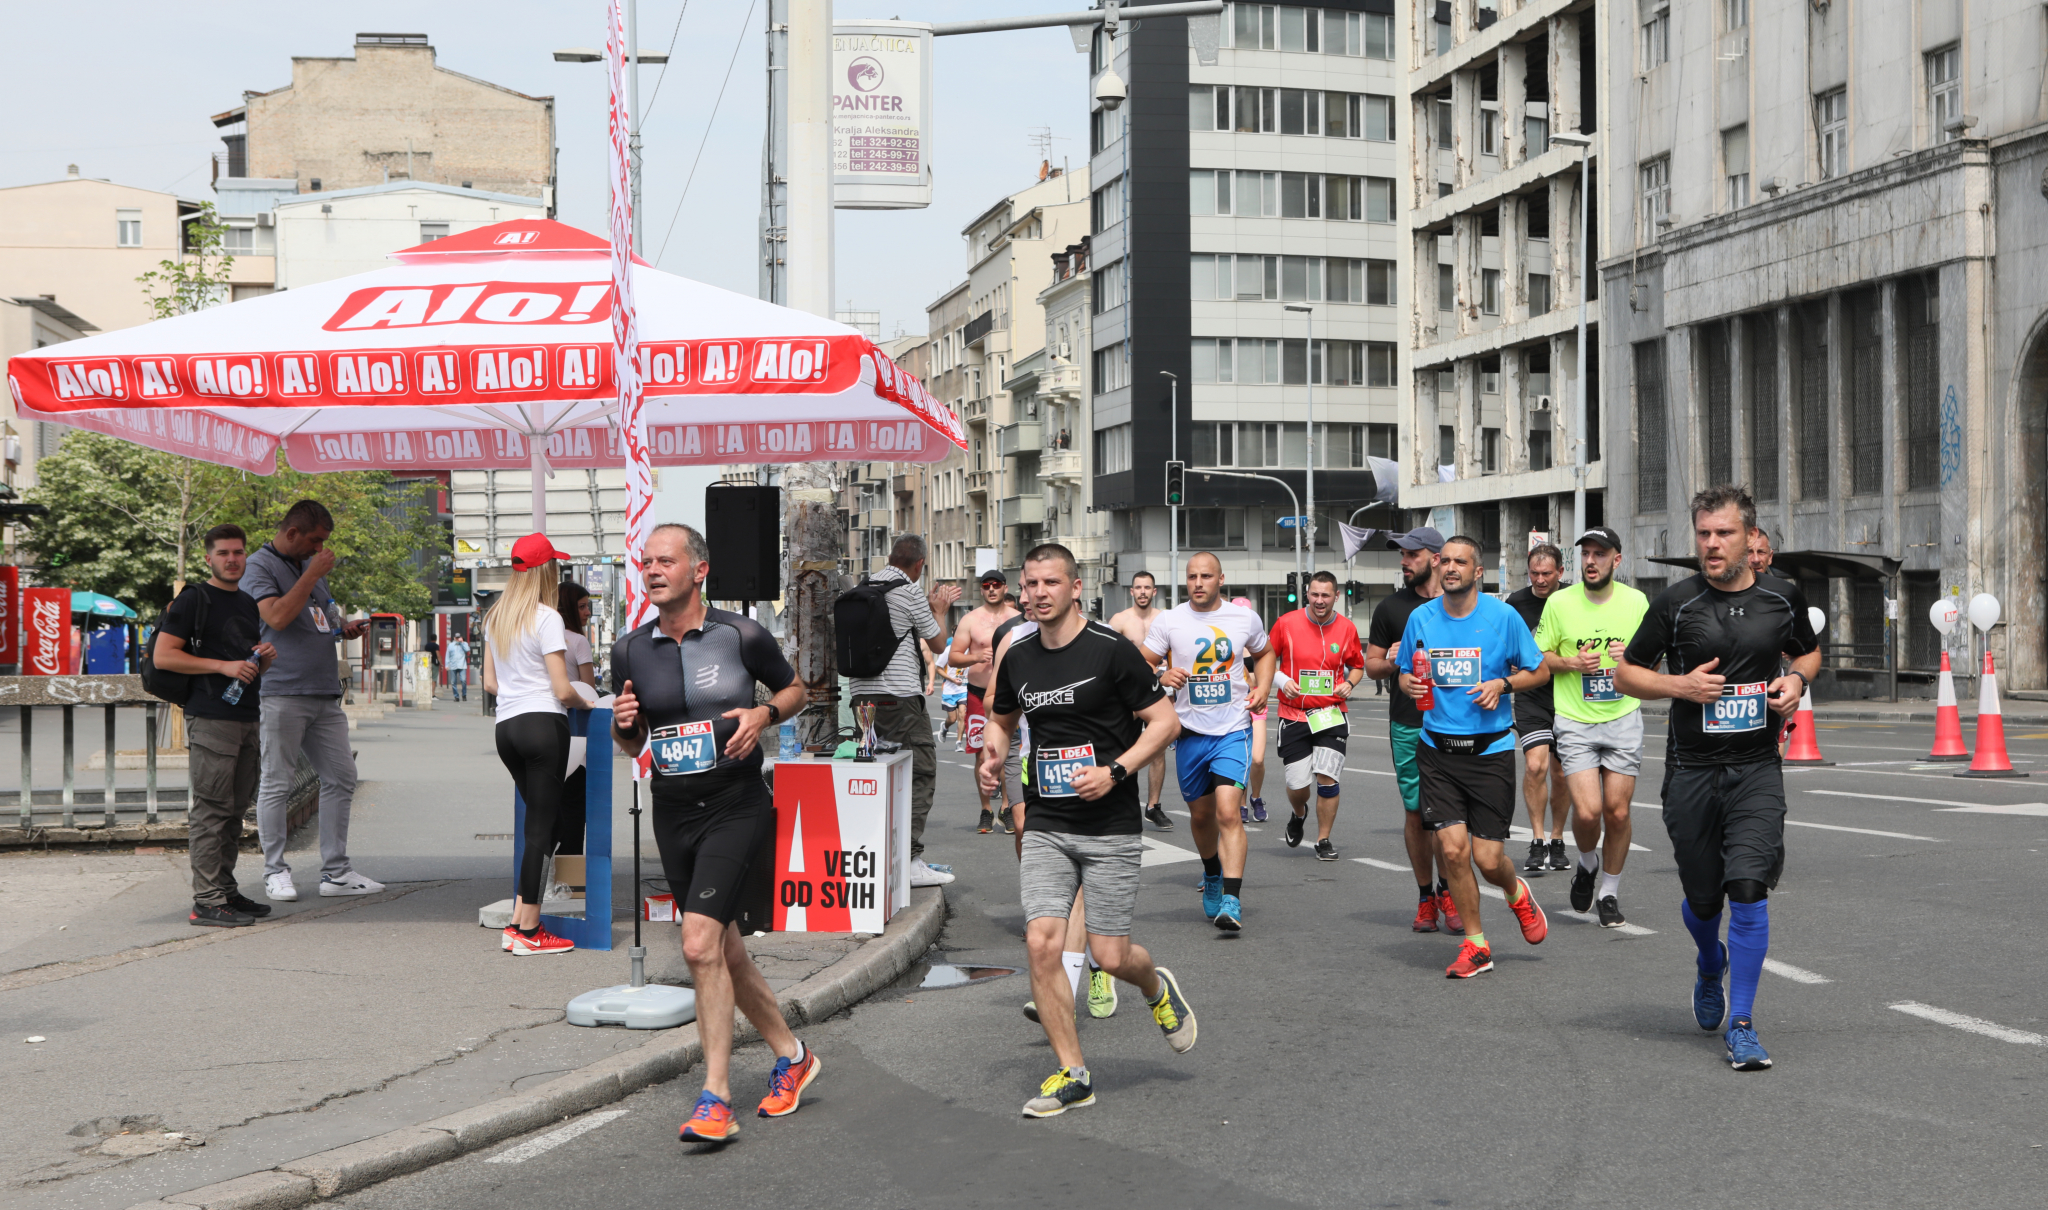 SPEKTAKL JE SVE BLIŽE Još 7 dana do 35. beogradskog maratona